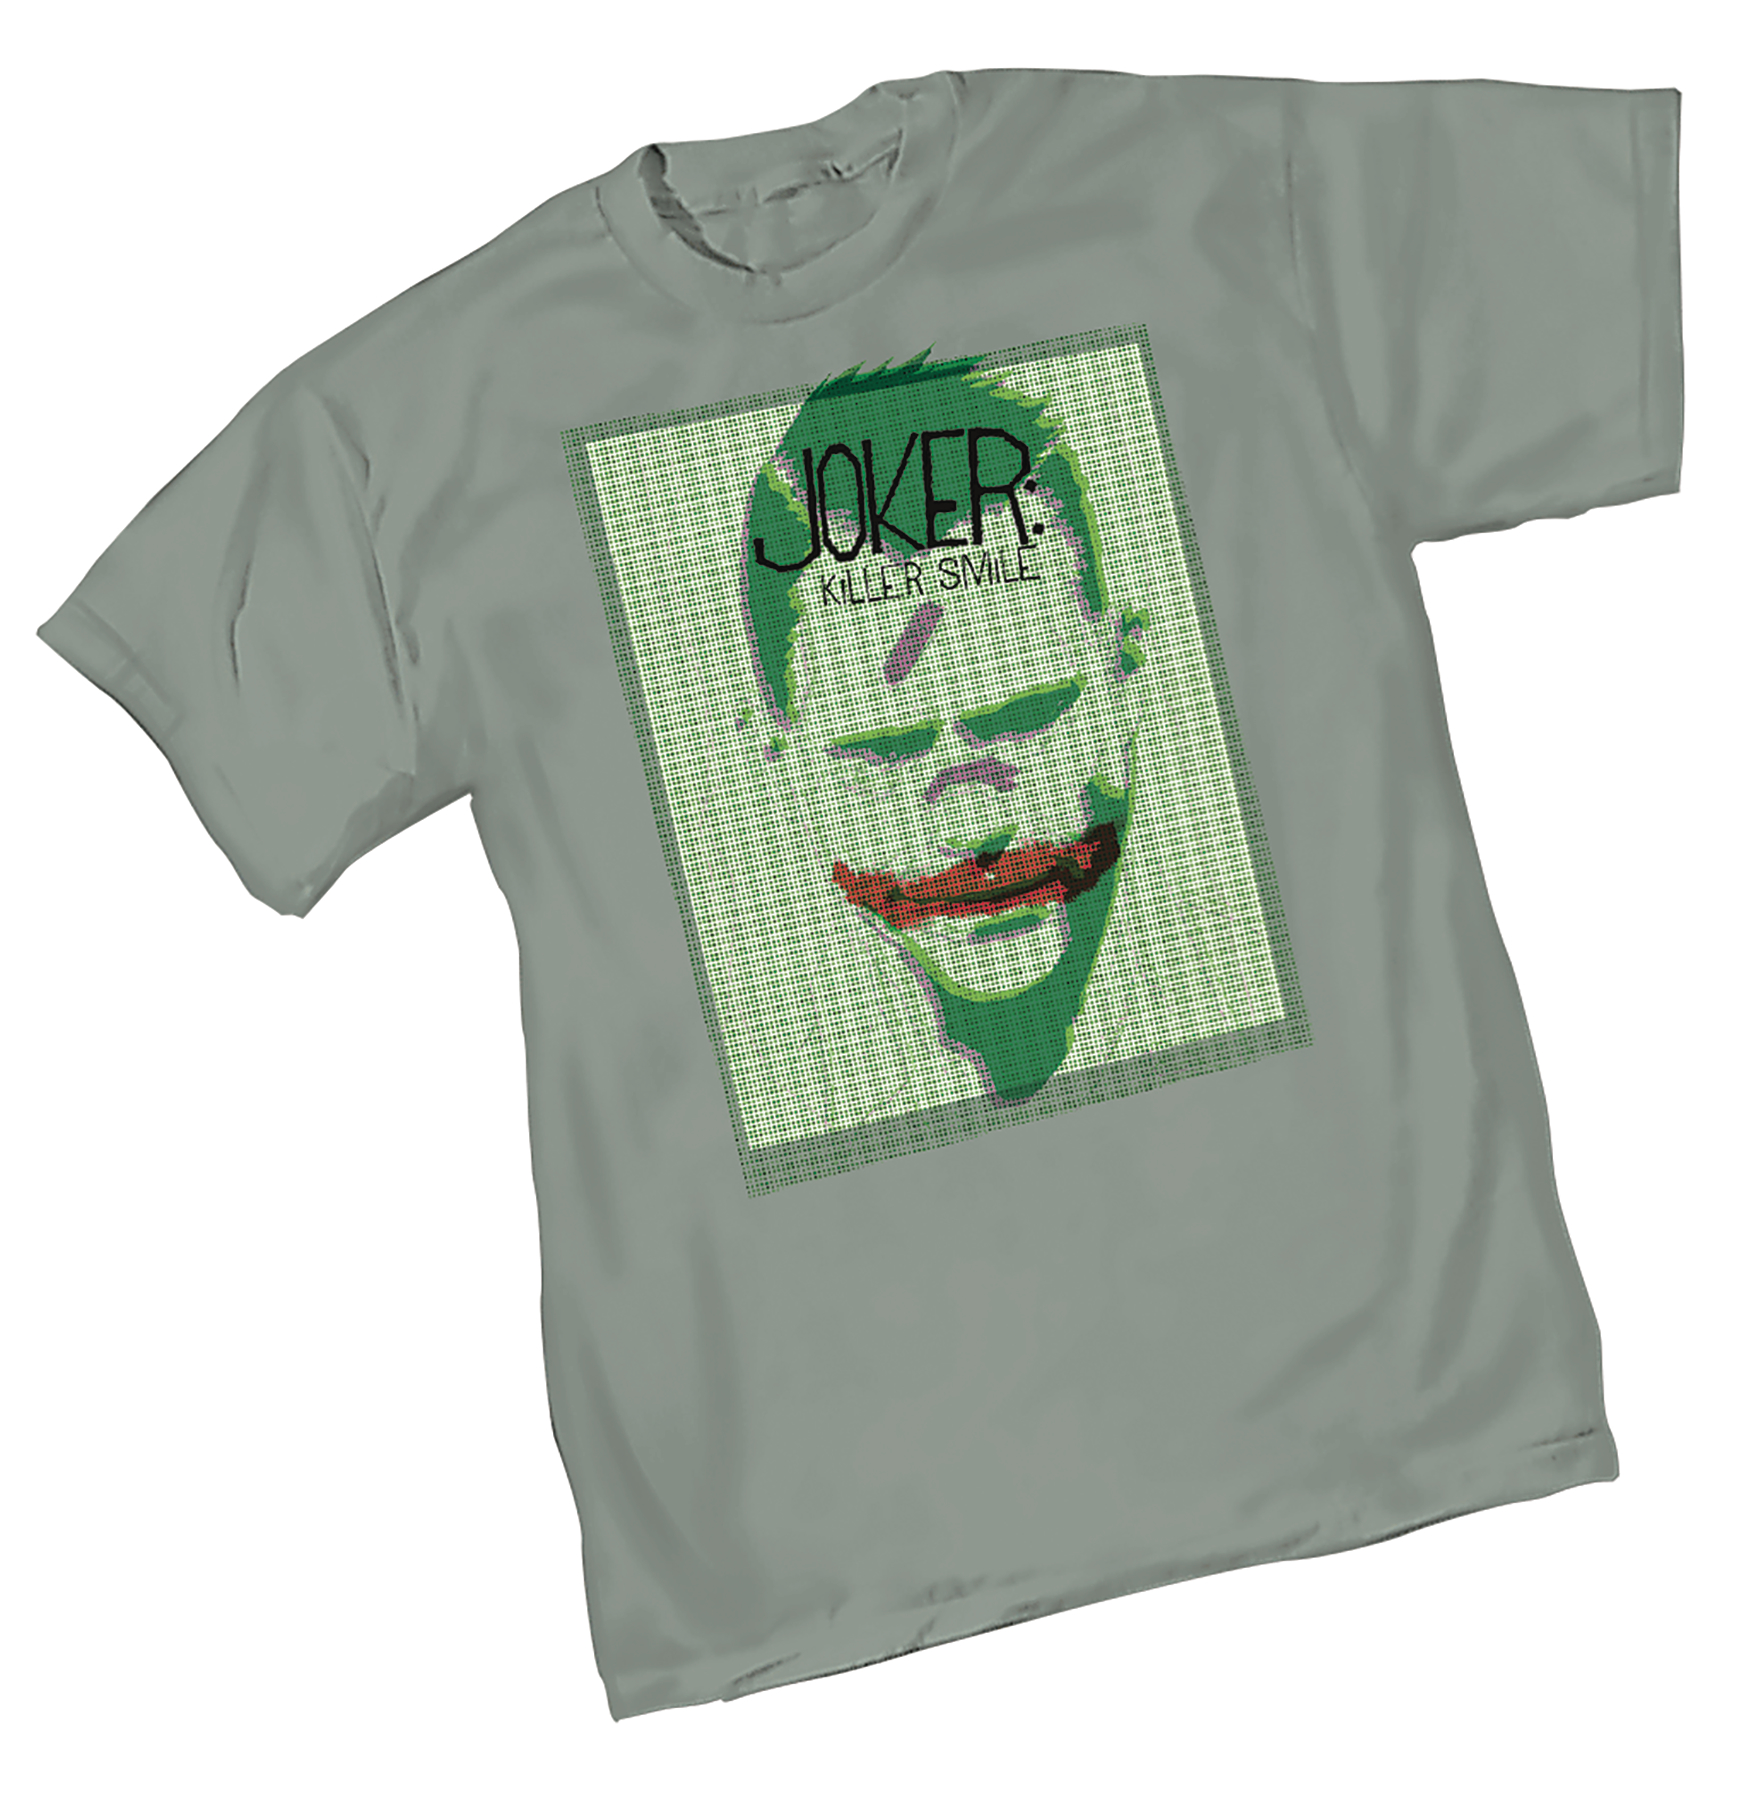 Joker Killer Smile T-Shirt Medium